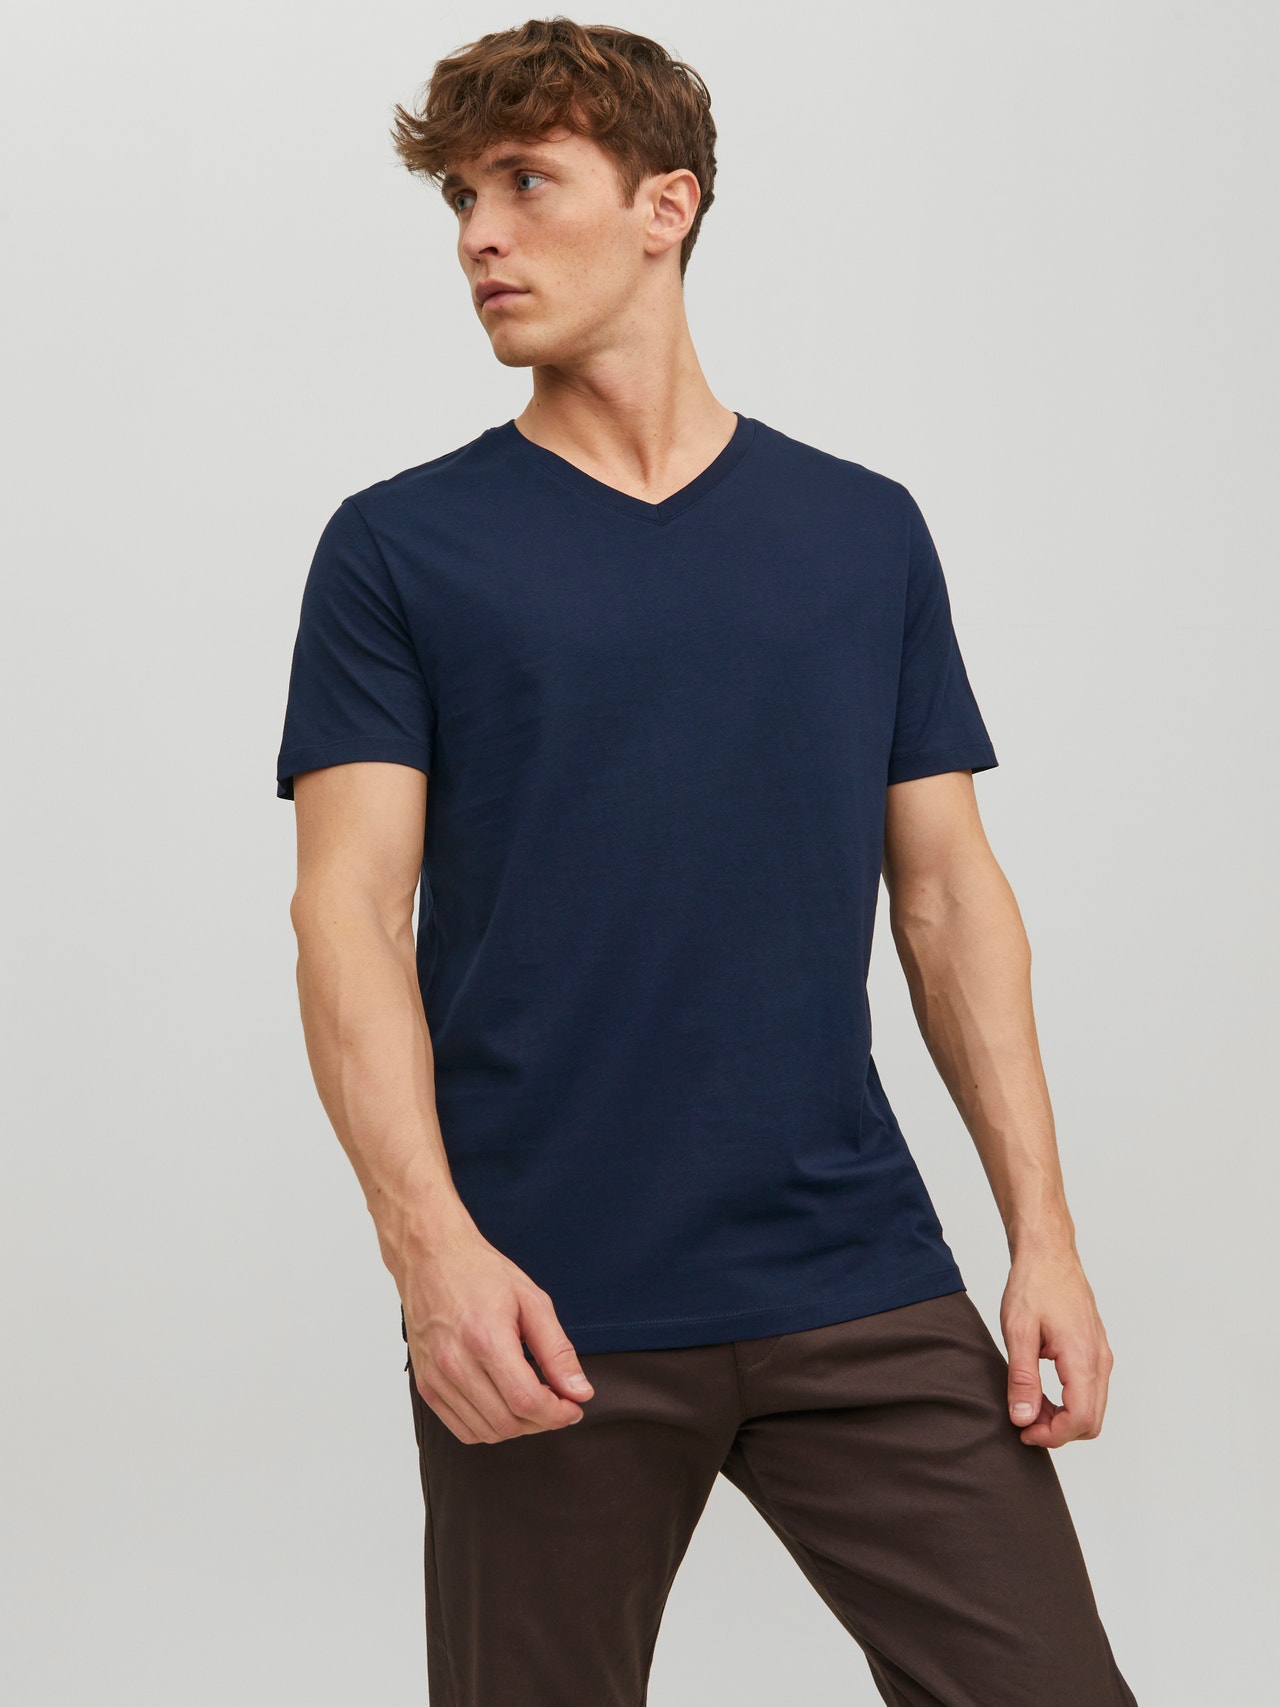 Jack & Jones Plain V-Neck T-shirt -Navy Blazer - 12156102